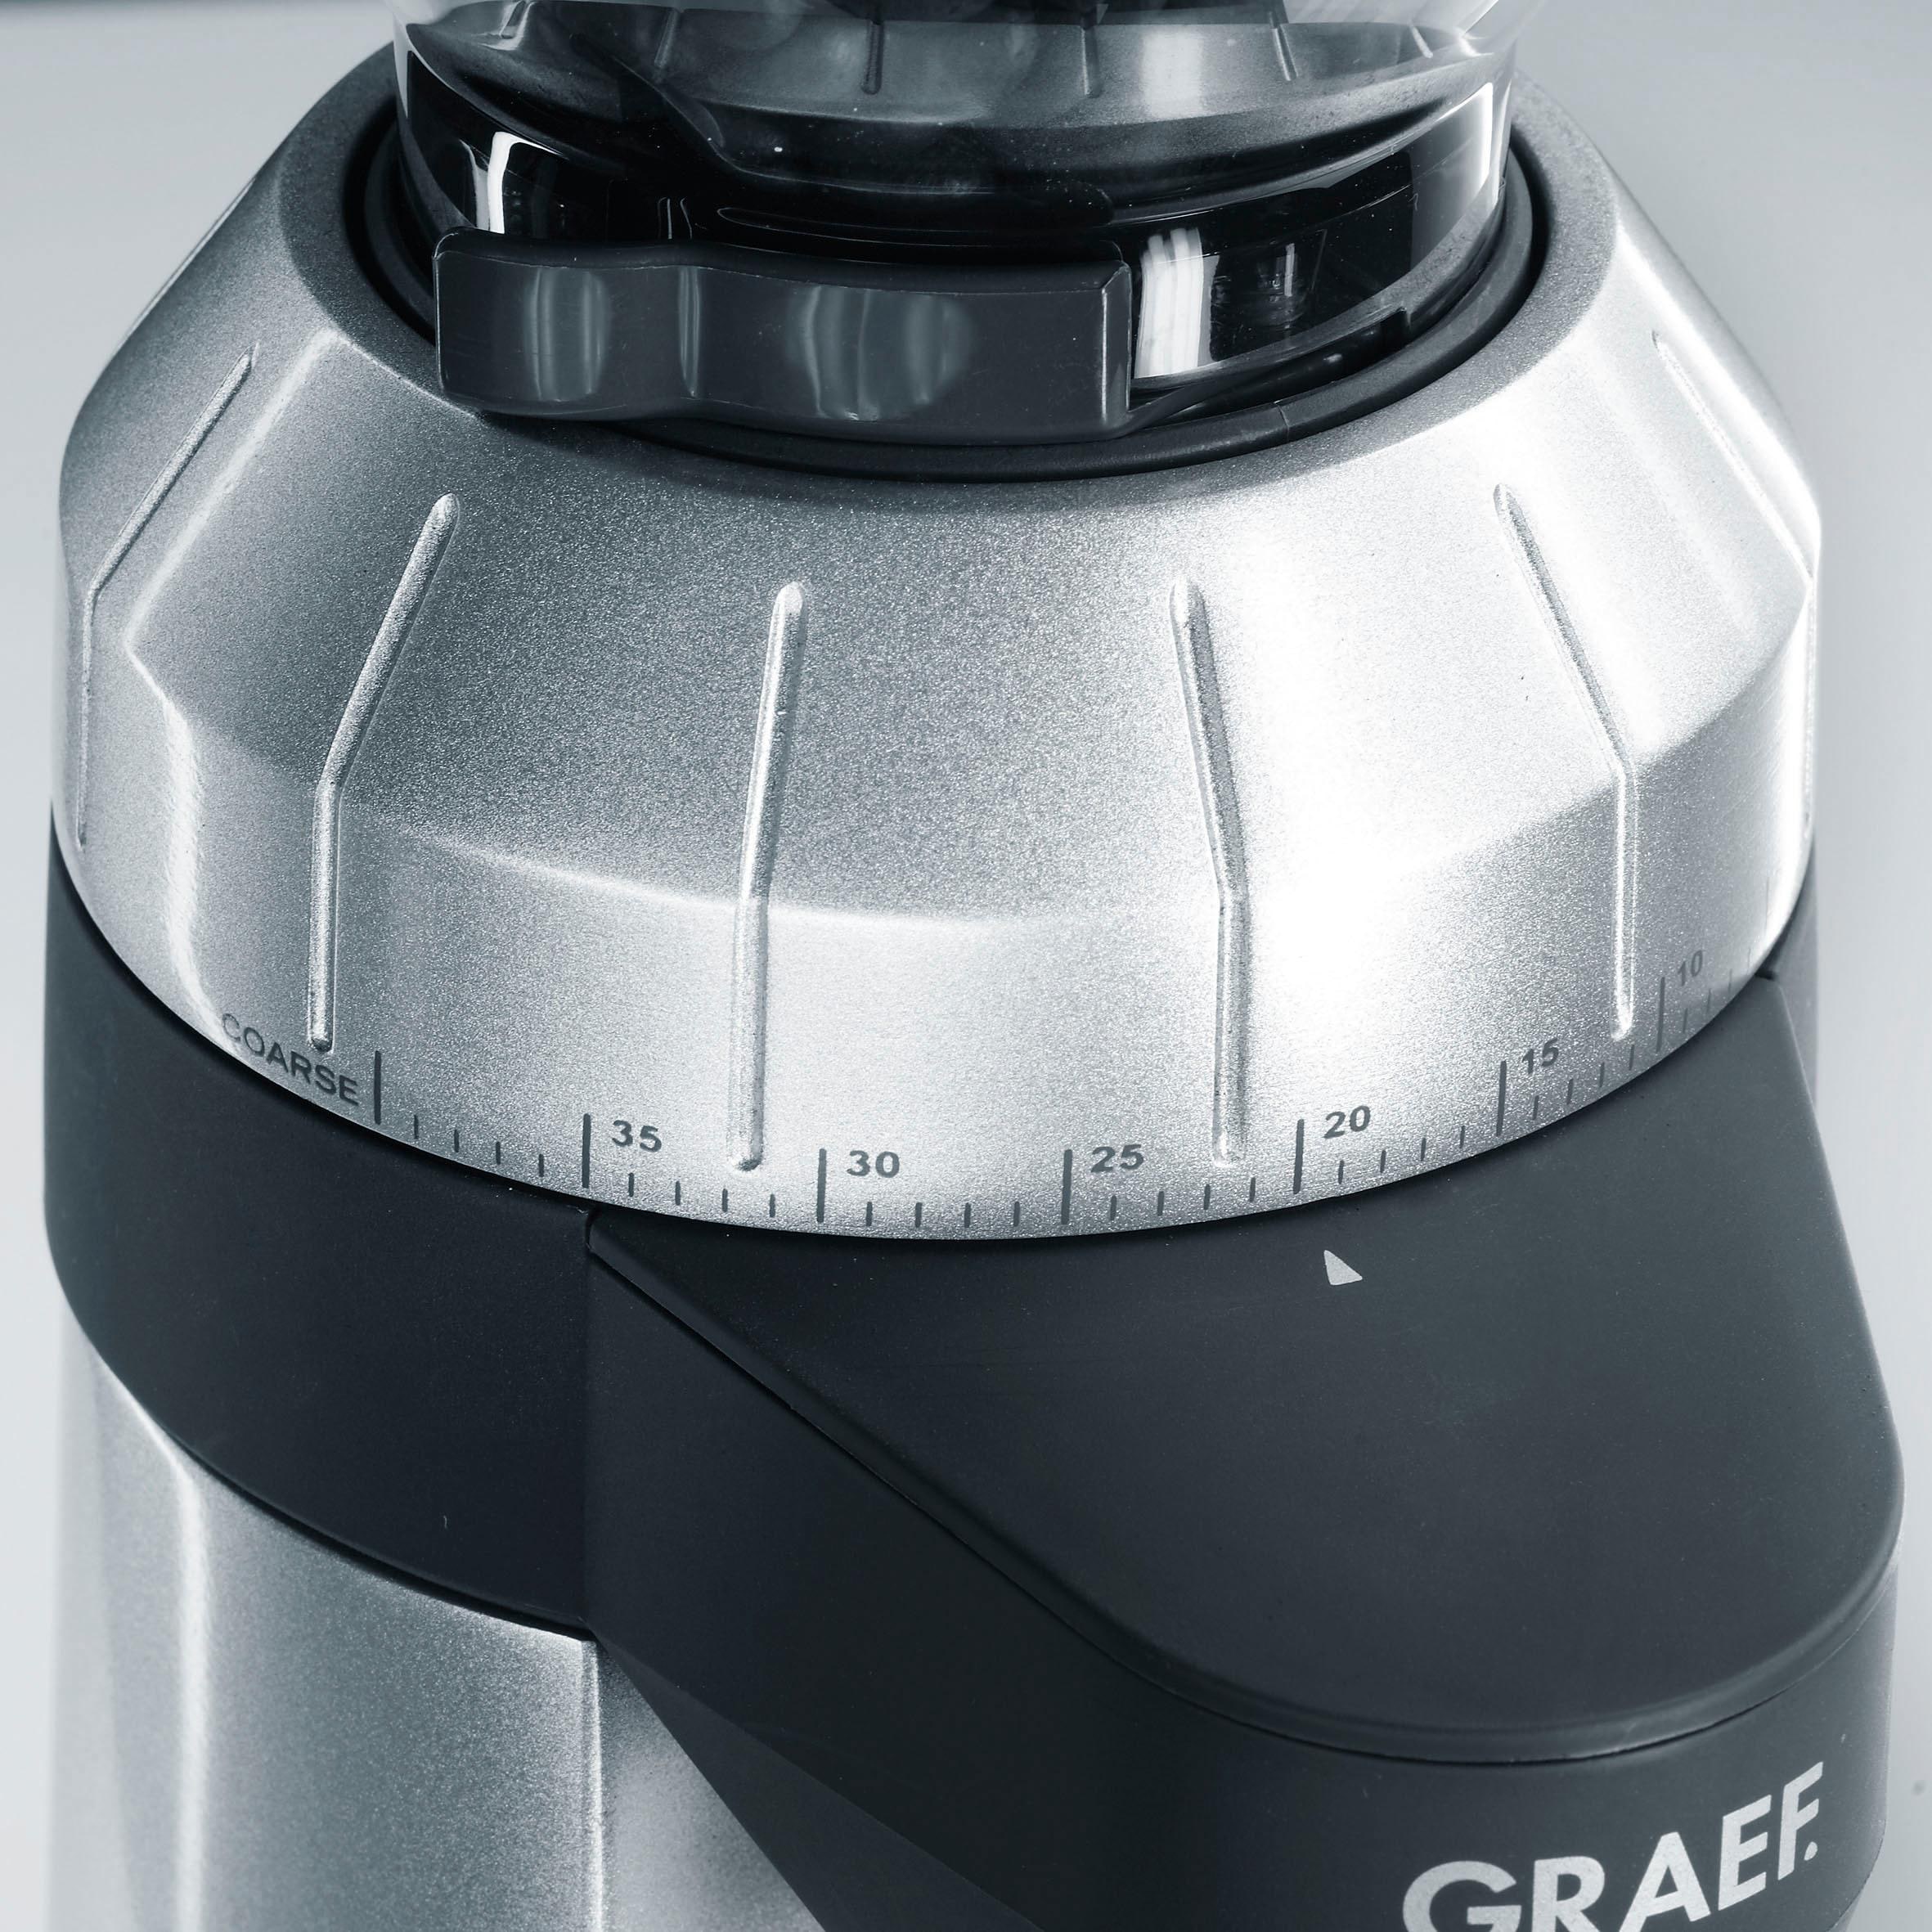 Graef Kaffeemühle »CM 800, silber«, 120 W, Kegelmahlwerk, 350 g Bohnenbehälter